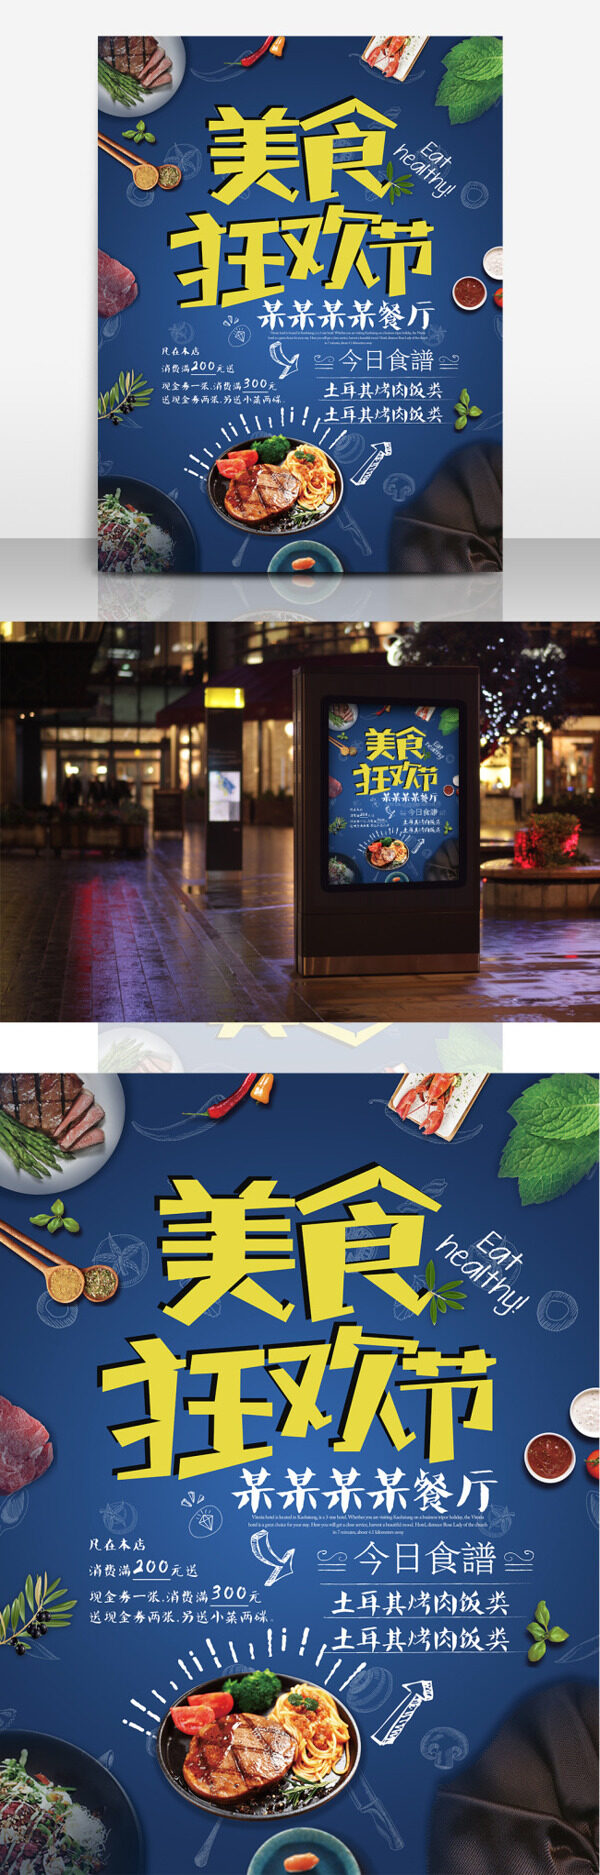 美食狂欢节促销宣传餐厅商场宣传海报